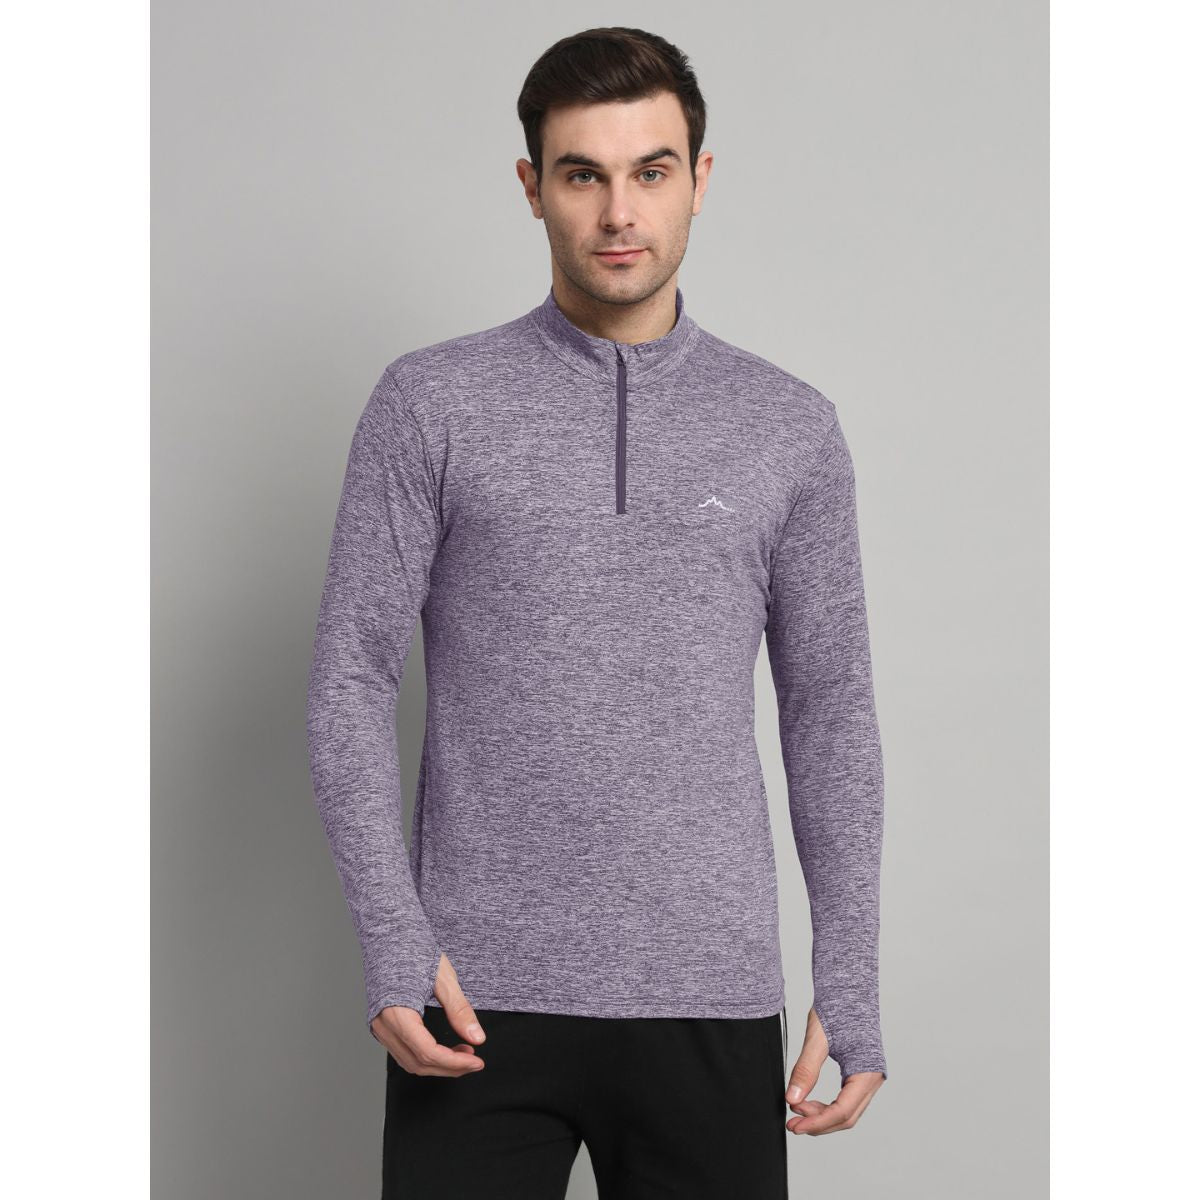 Men's Nomadic Full Sleeves T-Shirt / Baselayer - Purple Gray 1